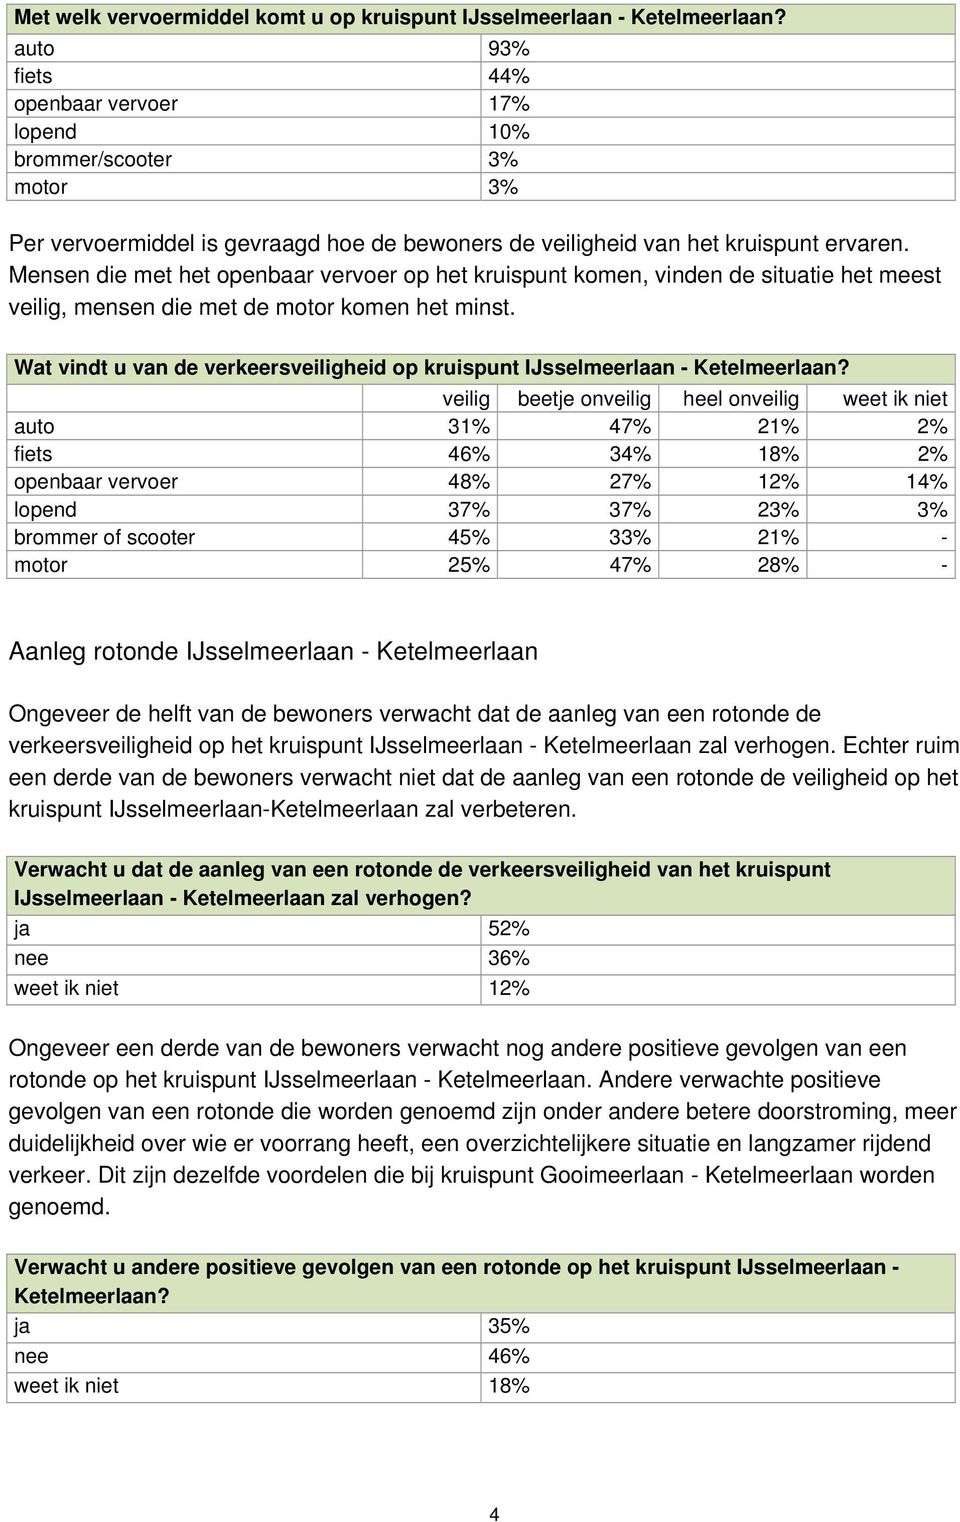 Wat vindt u van de verkeersveiligheid op kruispunt IJsselmeerlaan - veilig beetje onveilig heel onveilig weet ik niet auto 31% 47% 21% 2% fiets 46% 34% 18% 2% openbaar vervoer 48% 27% 12% 14% lopend